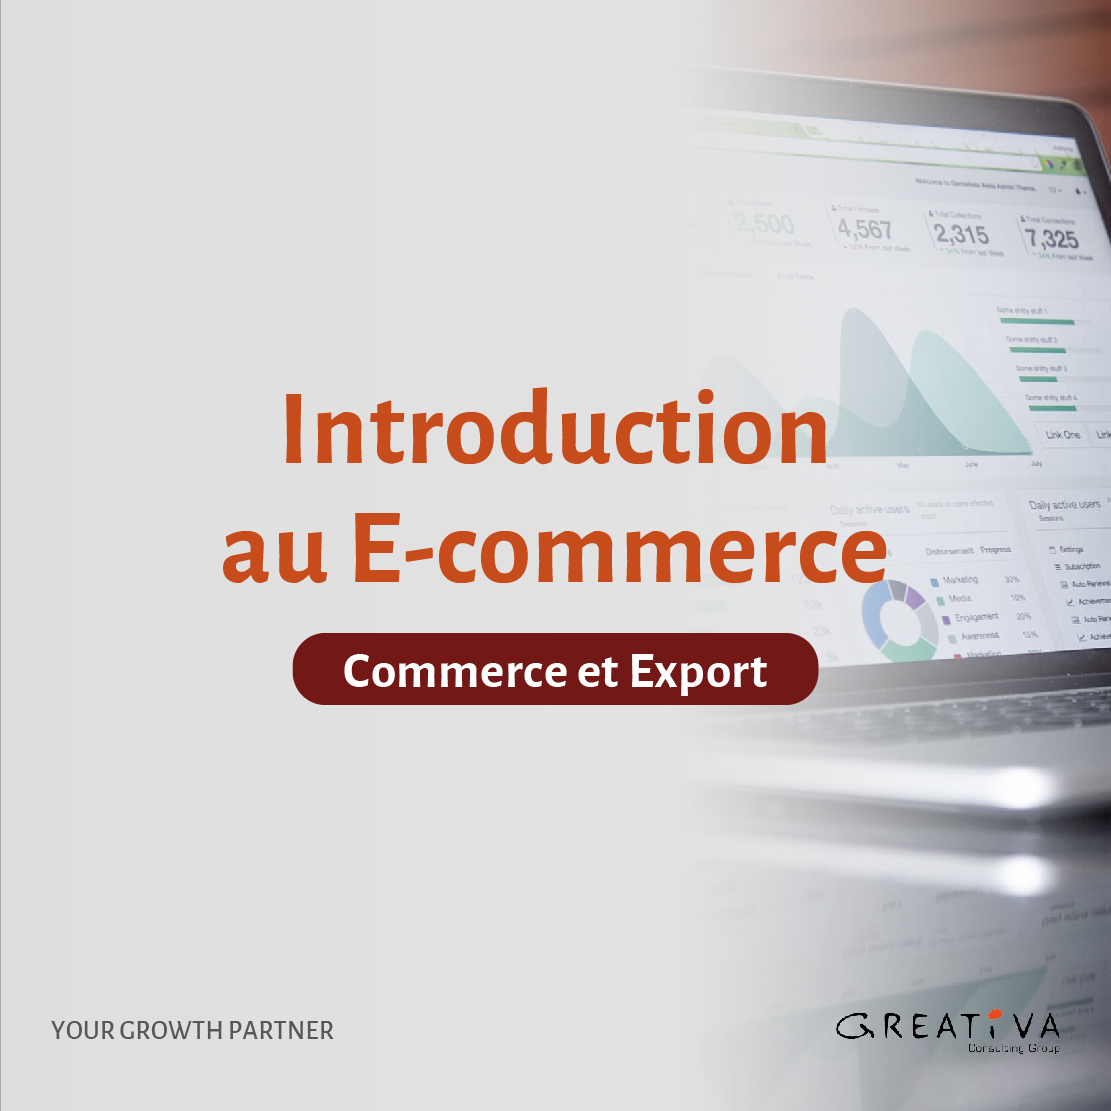 Introduction au E-commerce